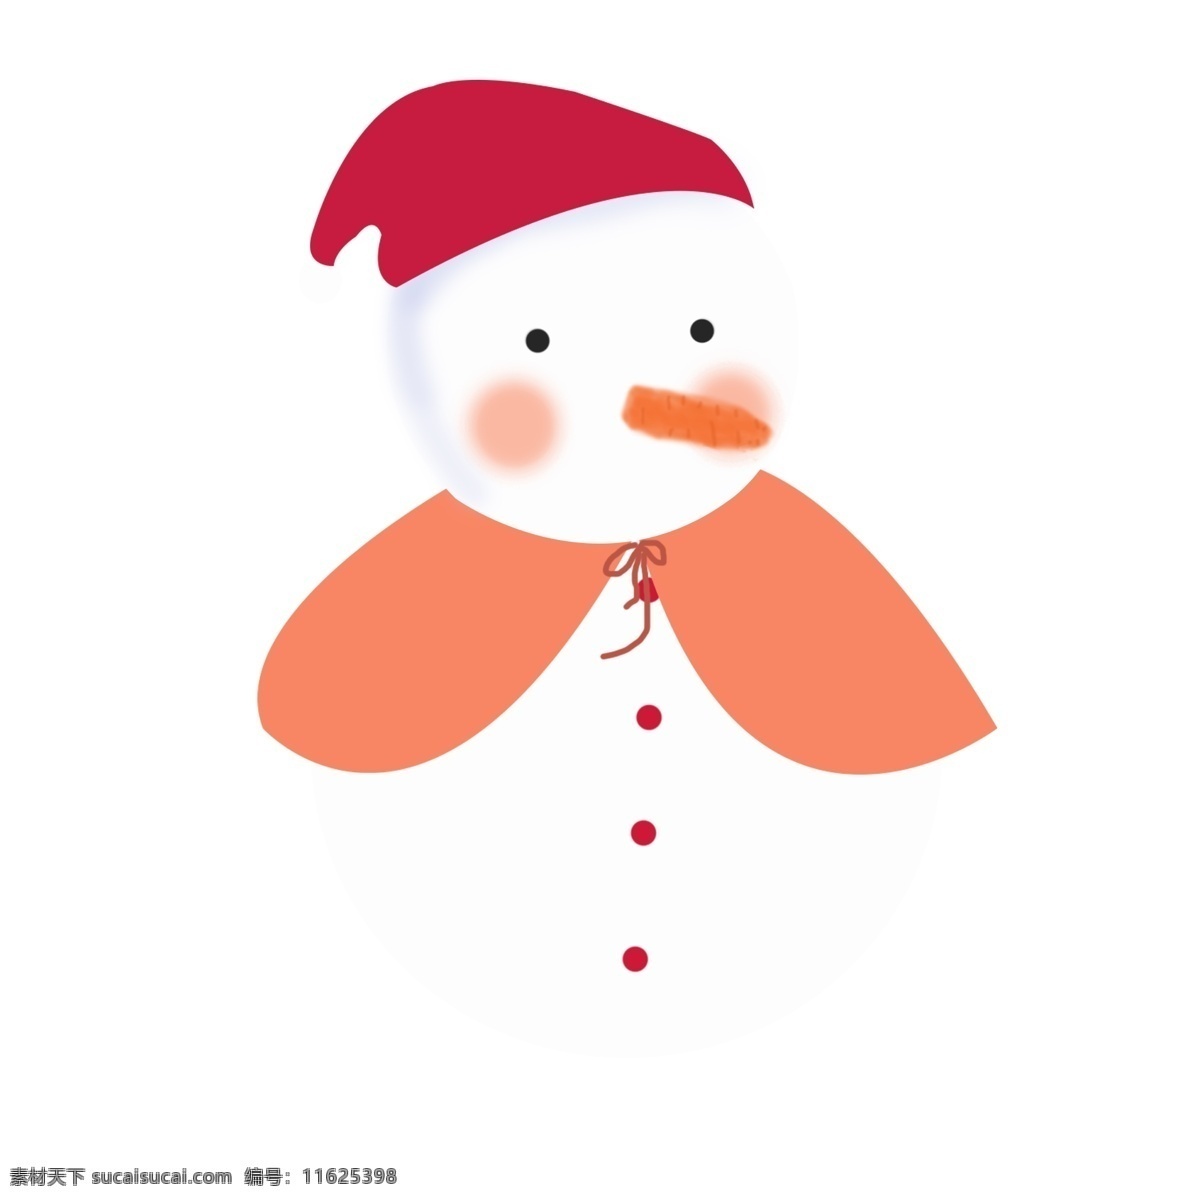 冬天 带 红色 帽子 雪人 插画 披风 胡萝卜 白色 橘色 可爱 天真 卡通 手绘 免抠 矢量